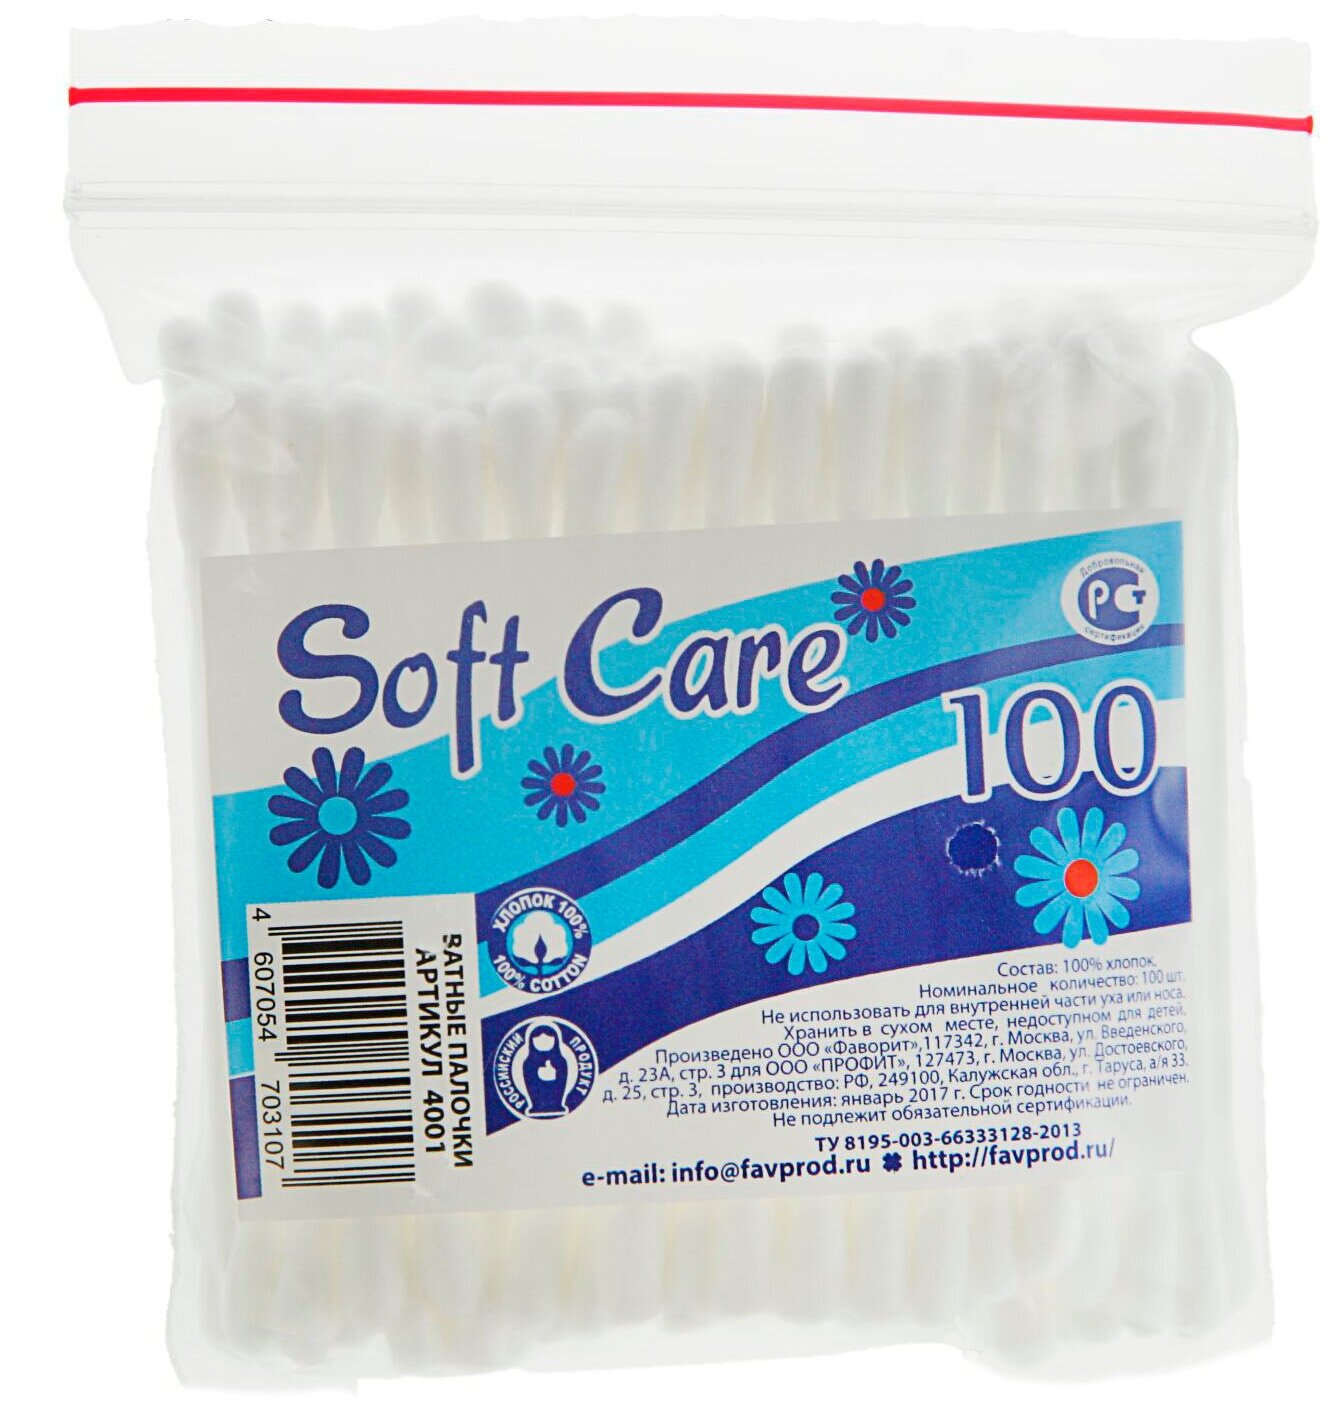   Soft Care, 100 .